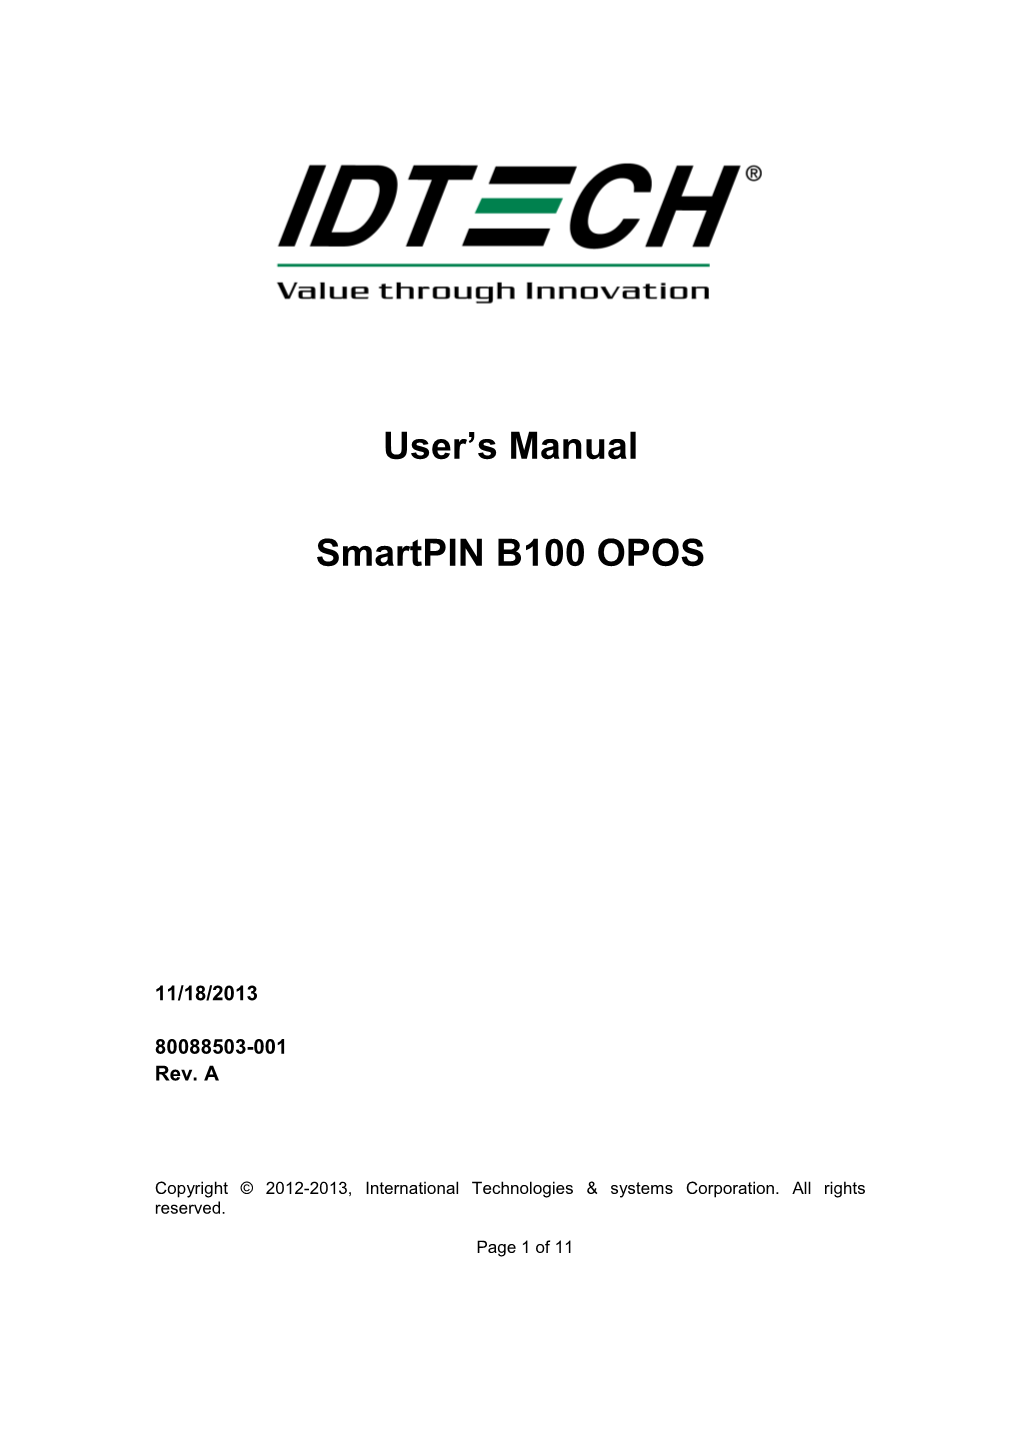 User's Manual Smartpin B100 OPOS